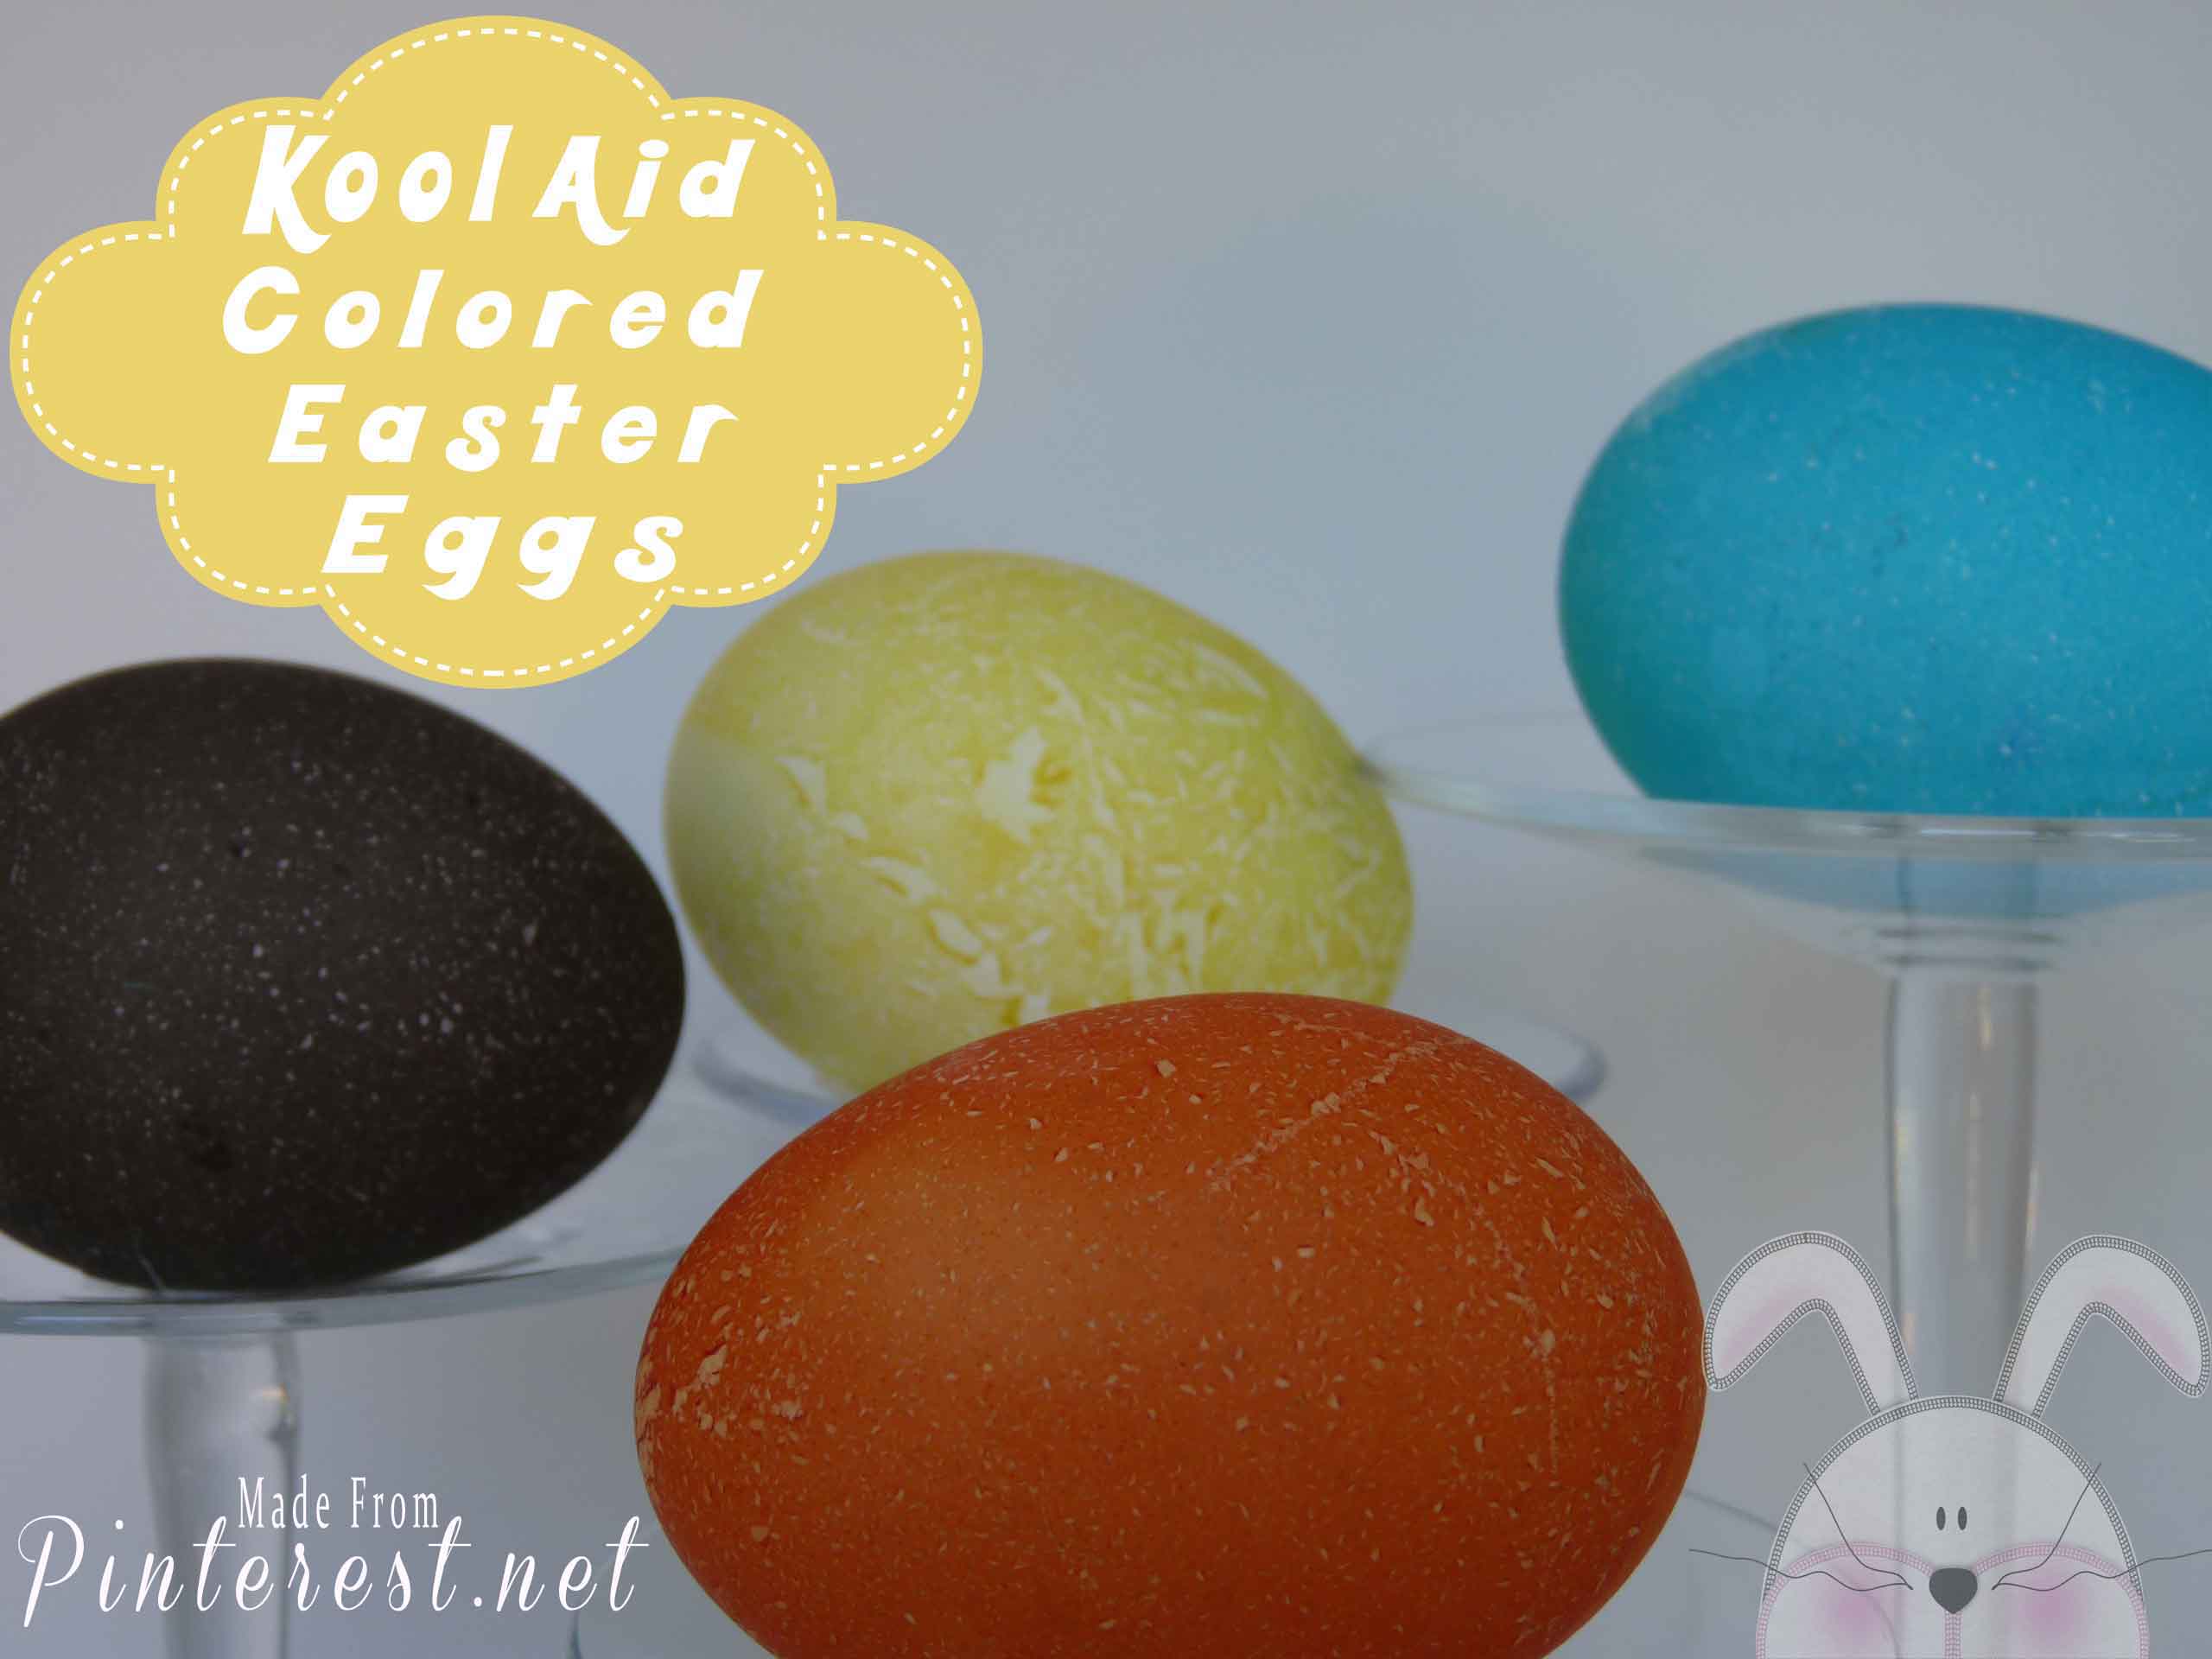 Kool Aid Colored Easter Eggs #Kool Aid Easter Eggs #Easter #Kool Aid